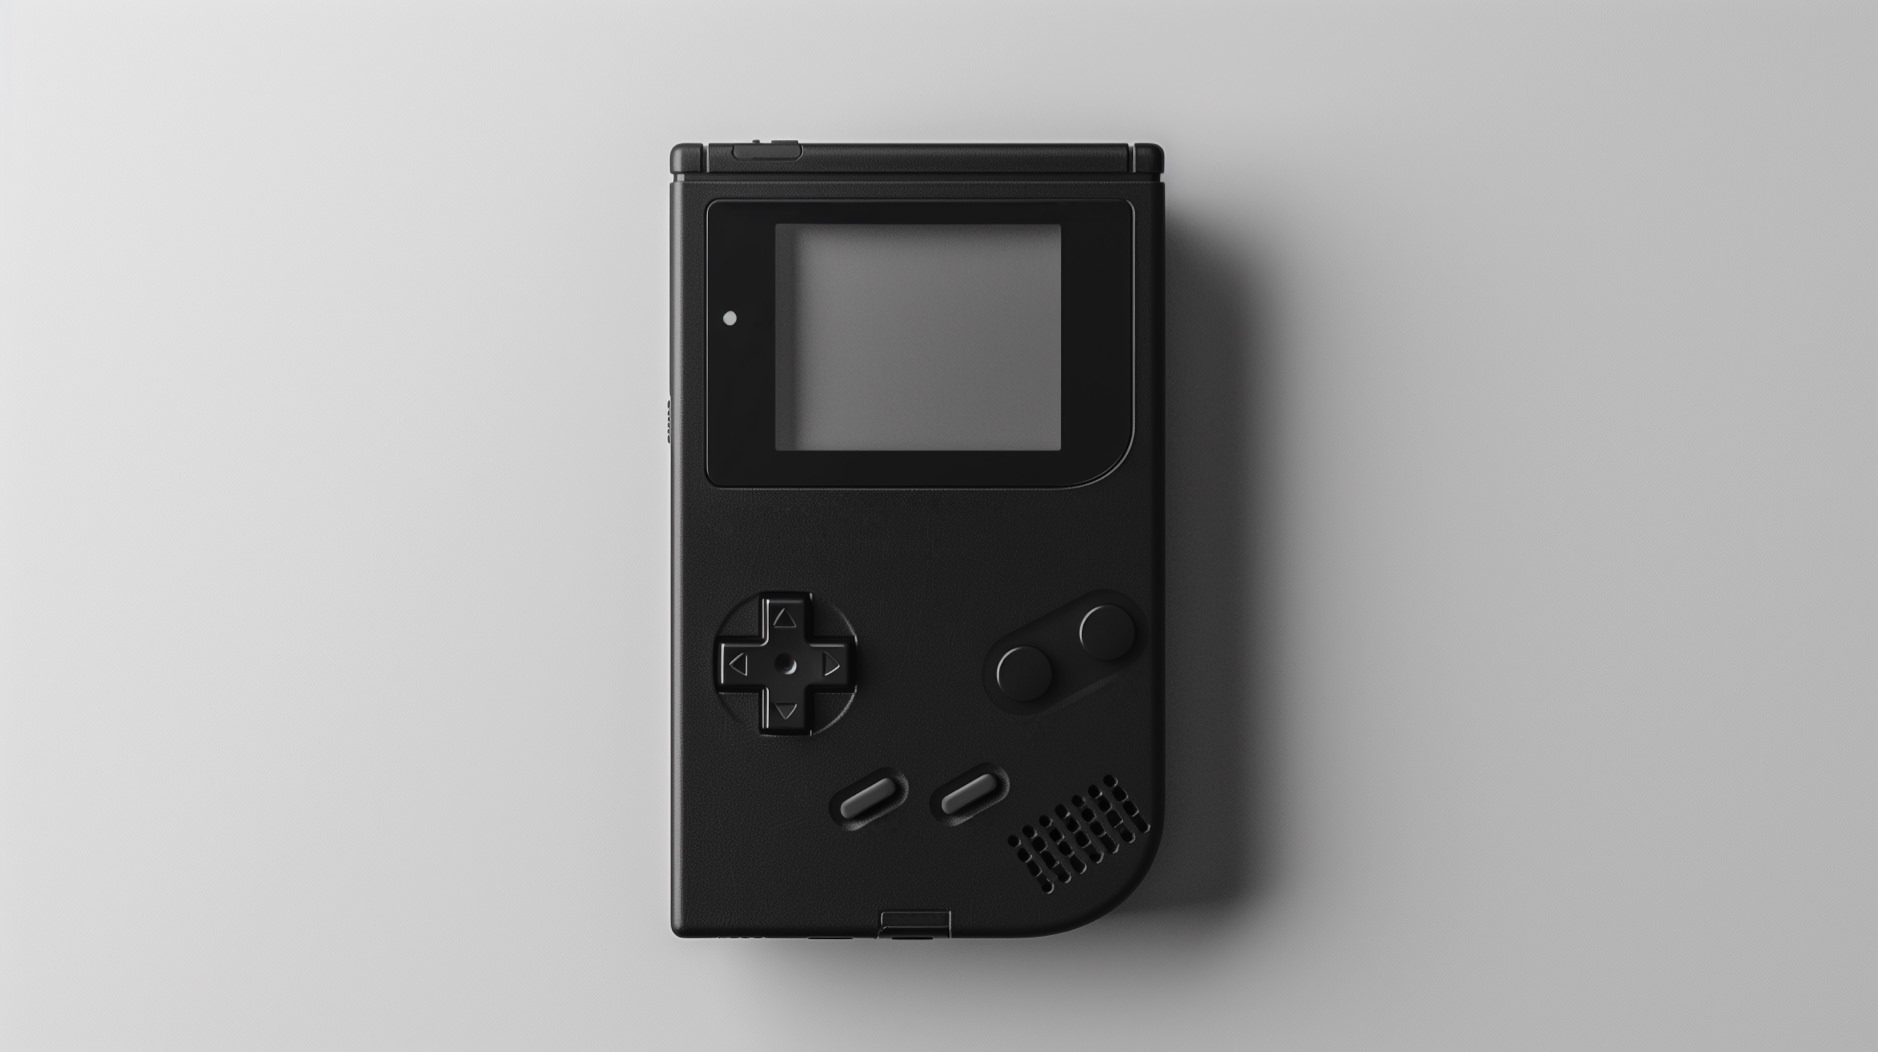 Das Bild zeigt einen schwarzen Handheld-Spielekonsole auf einem weißen Hintergrund. Die Konsole hat ein Steuerkreuz auf der linken Seite, zwei runde Tasten auf der rechten Seite, sowie zwei längliche Tasten darunter und einen kleinen Bildschirm in der Mitte.